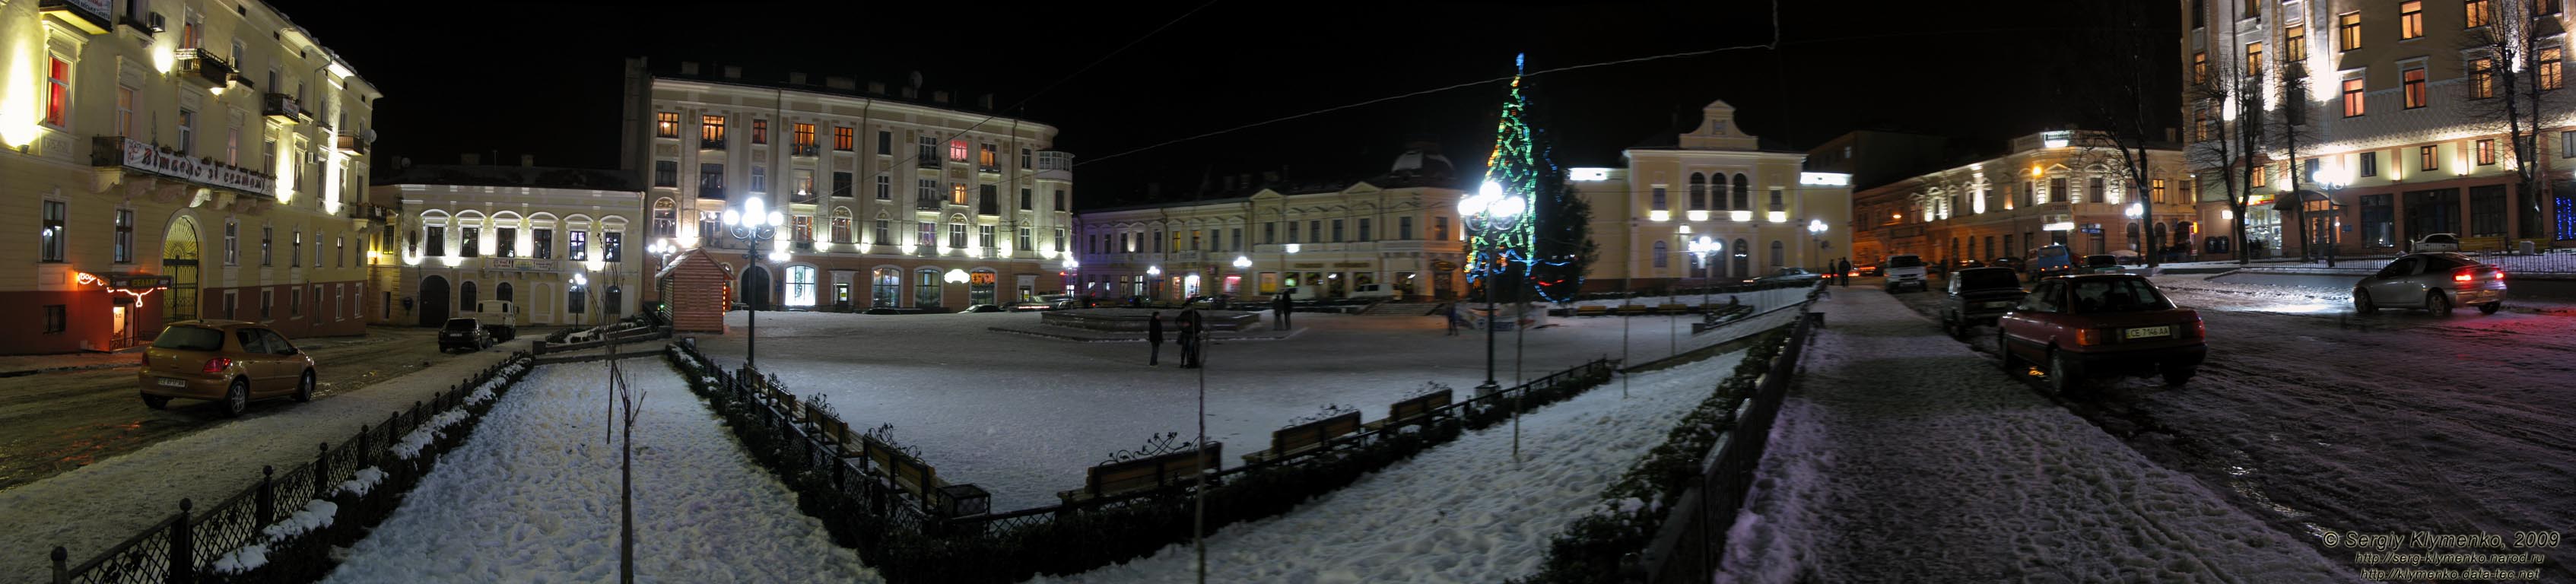 Черновцы. Площадь Филармонии ночью (панорама ~120°).